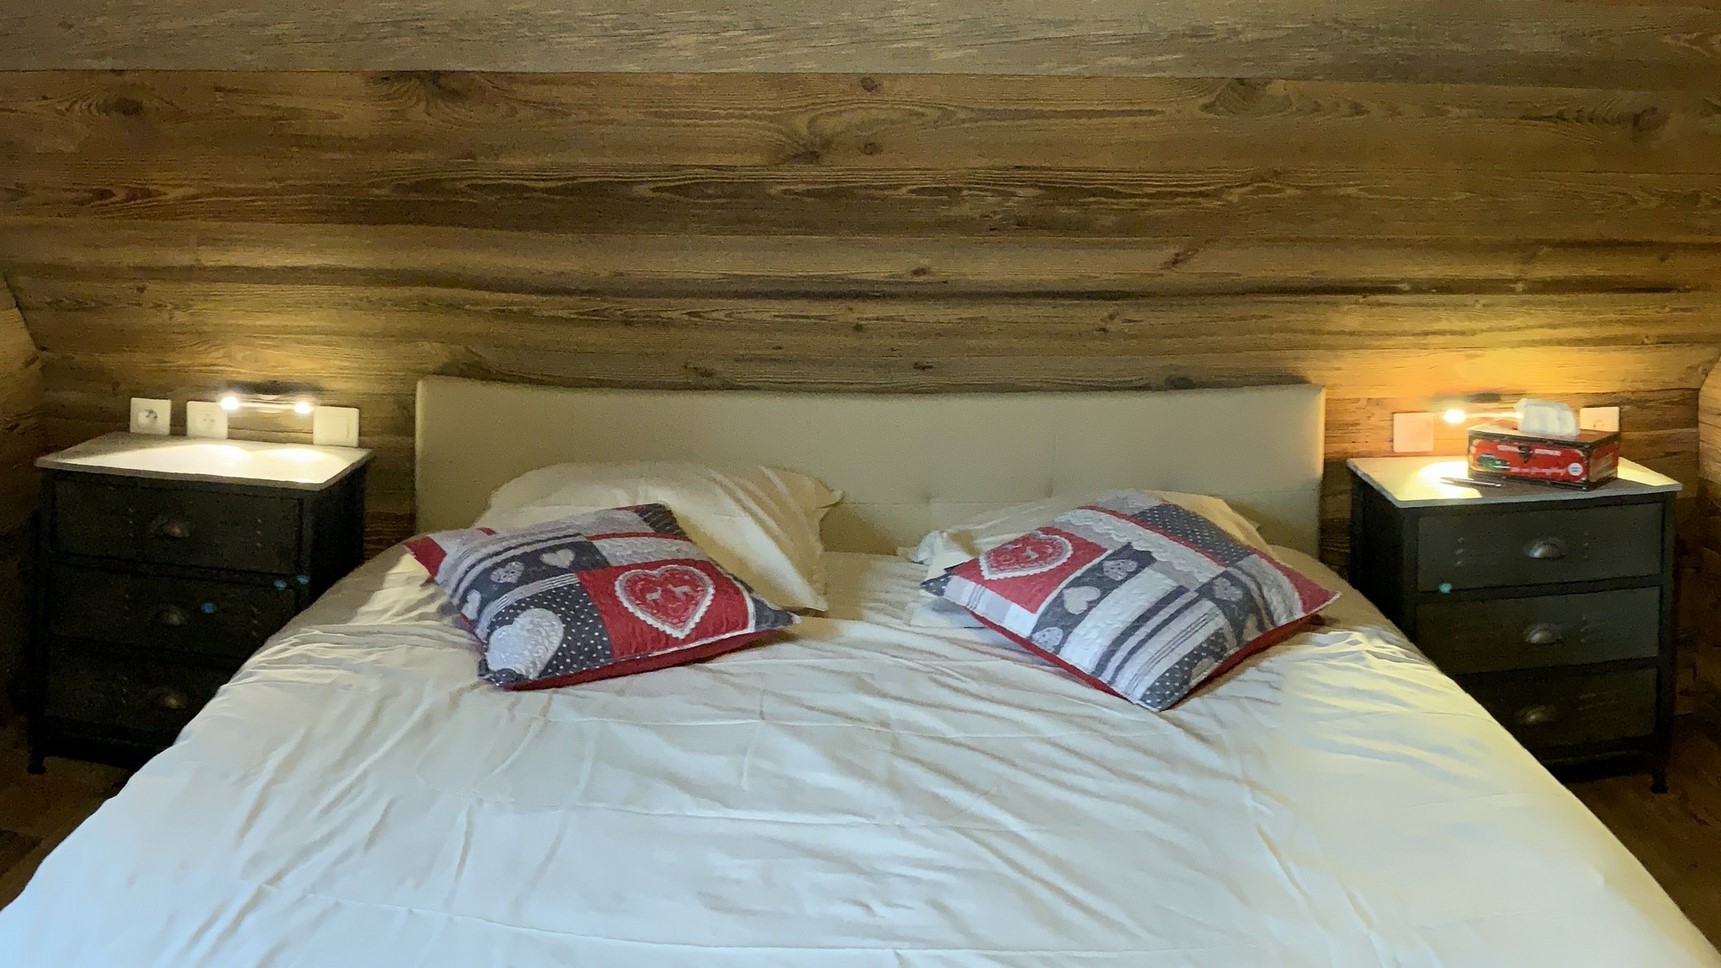 Super Besse chalet, Anorak chalet, Tyrolean bedroom, headboard